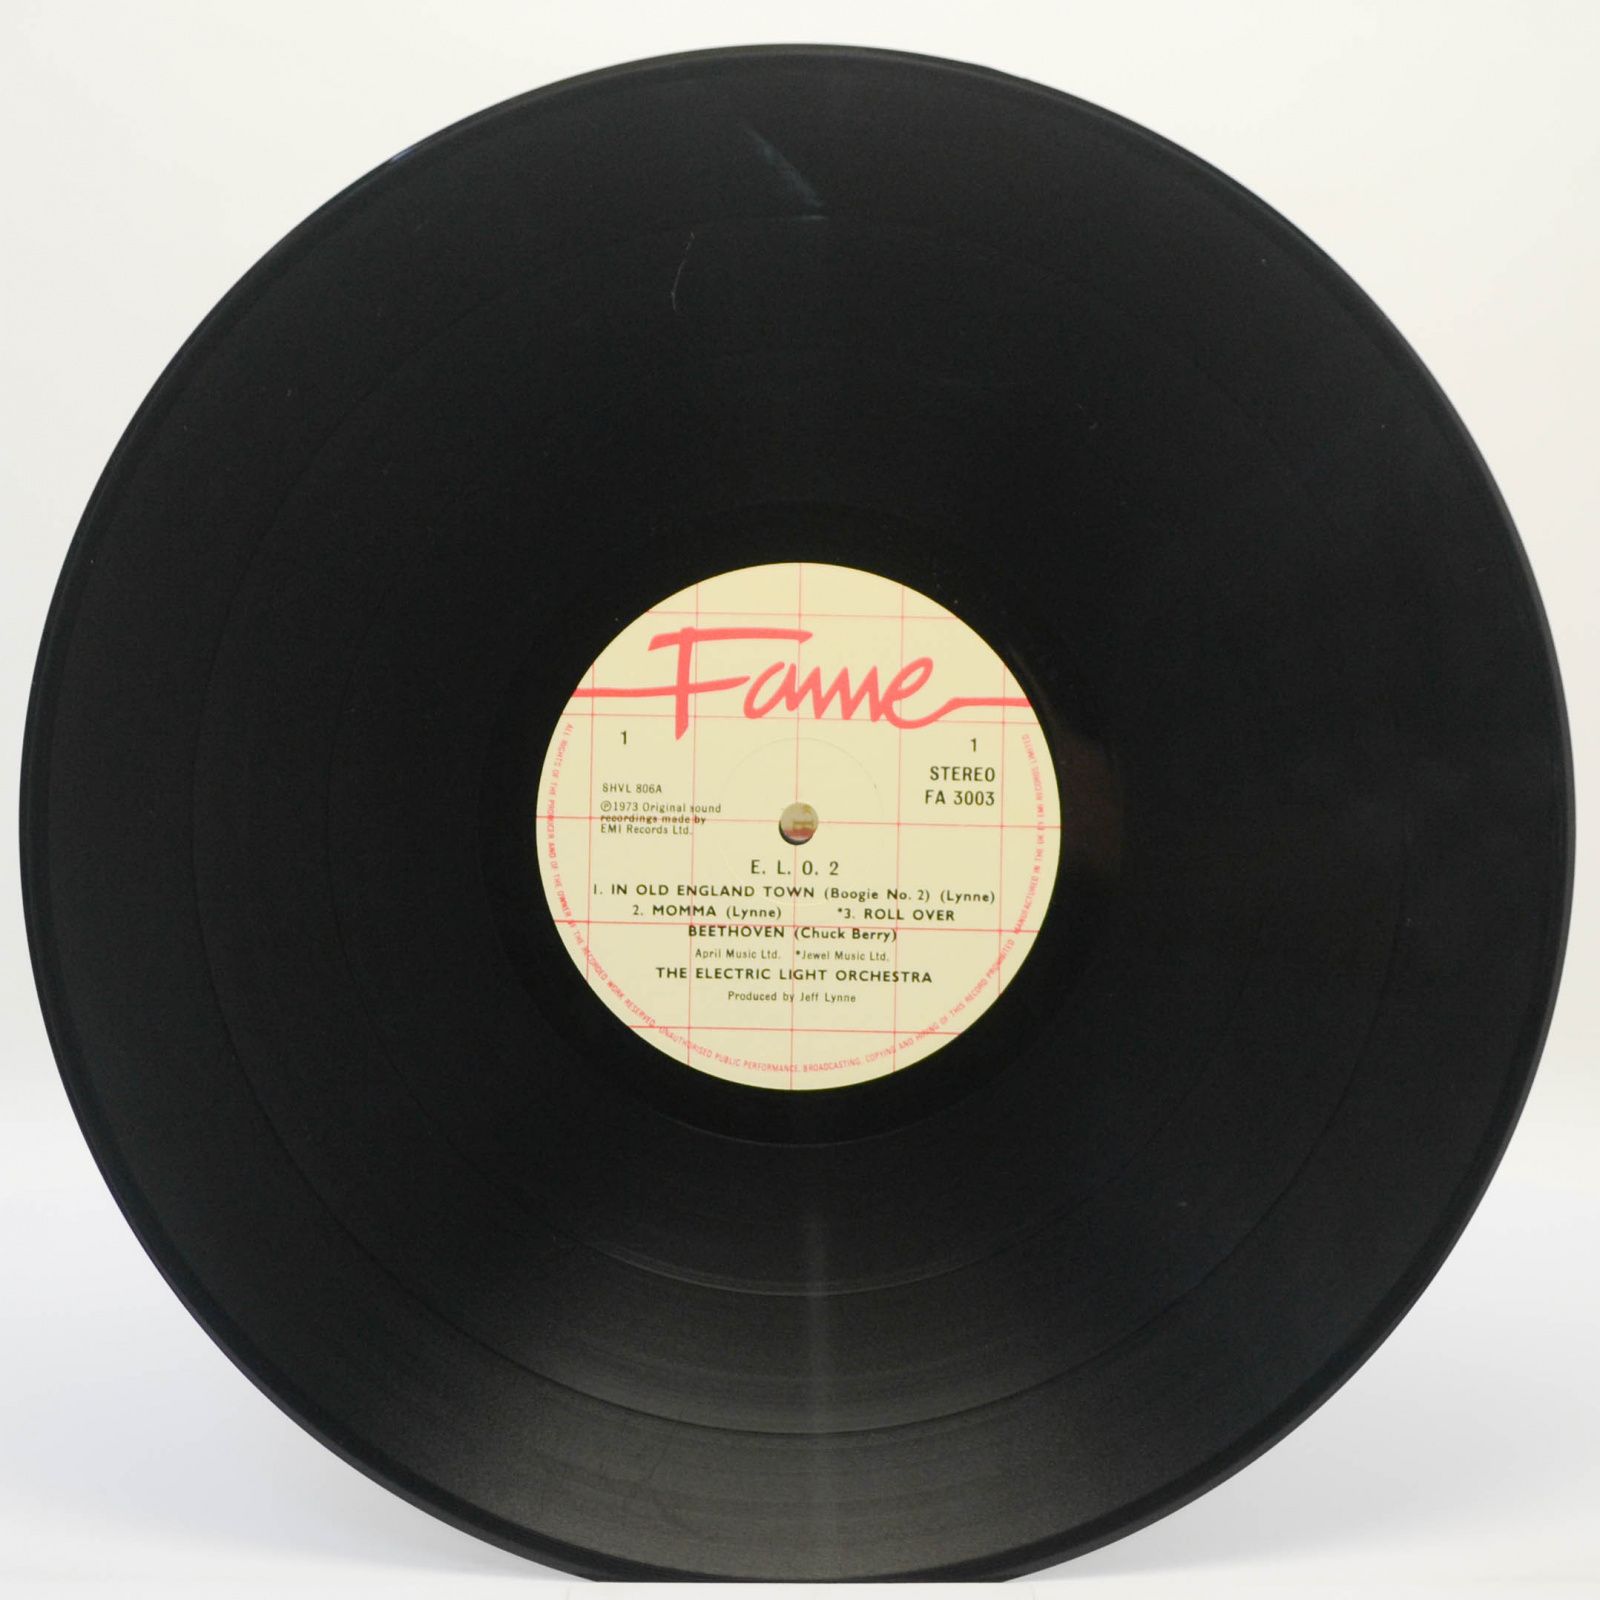 Electric Light Orchestra — E.L.O. 2, 1982